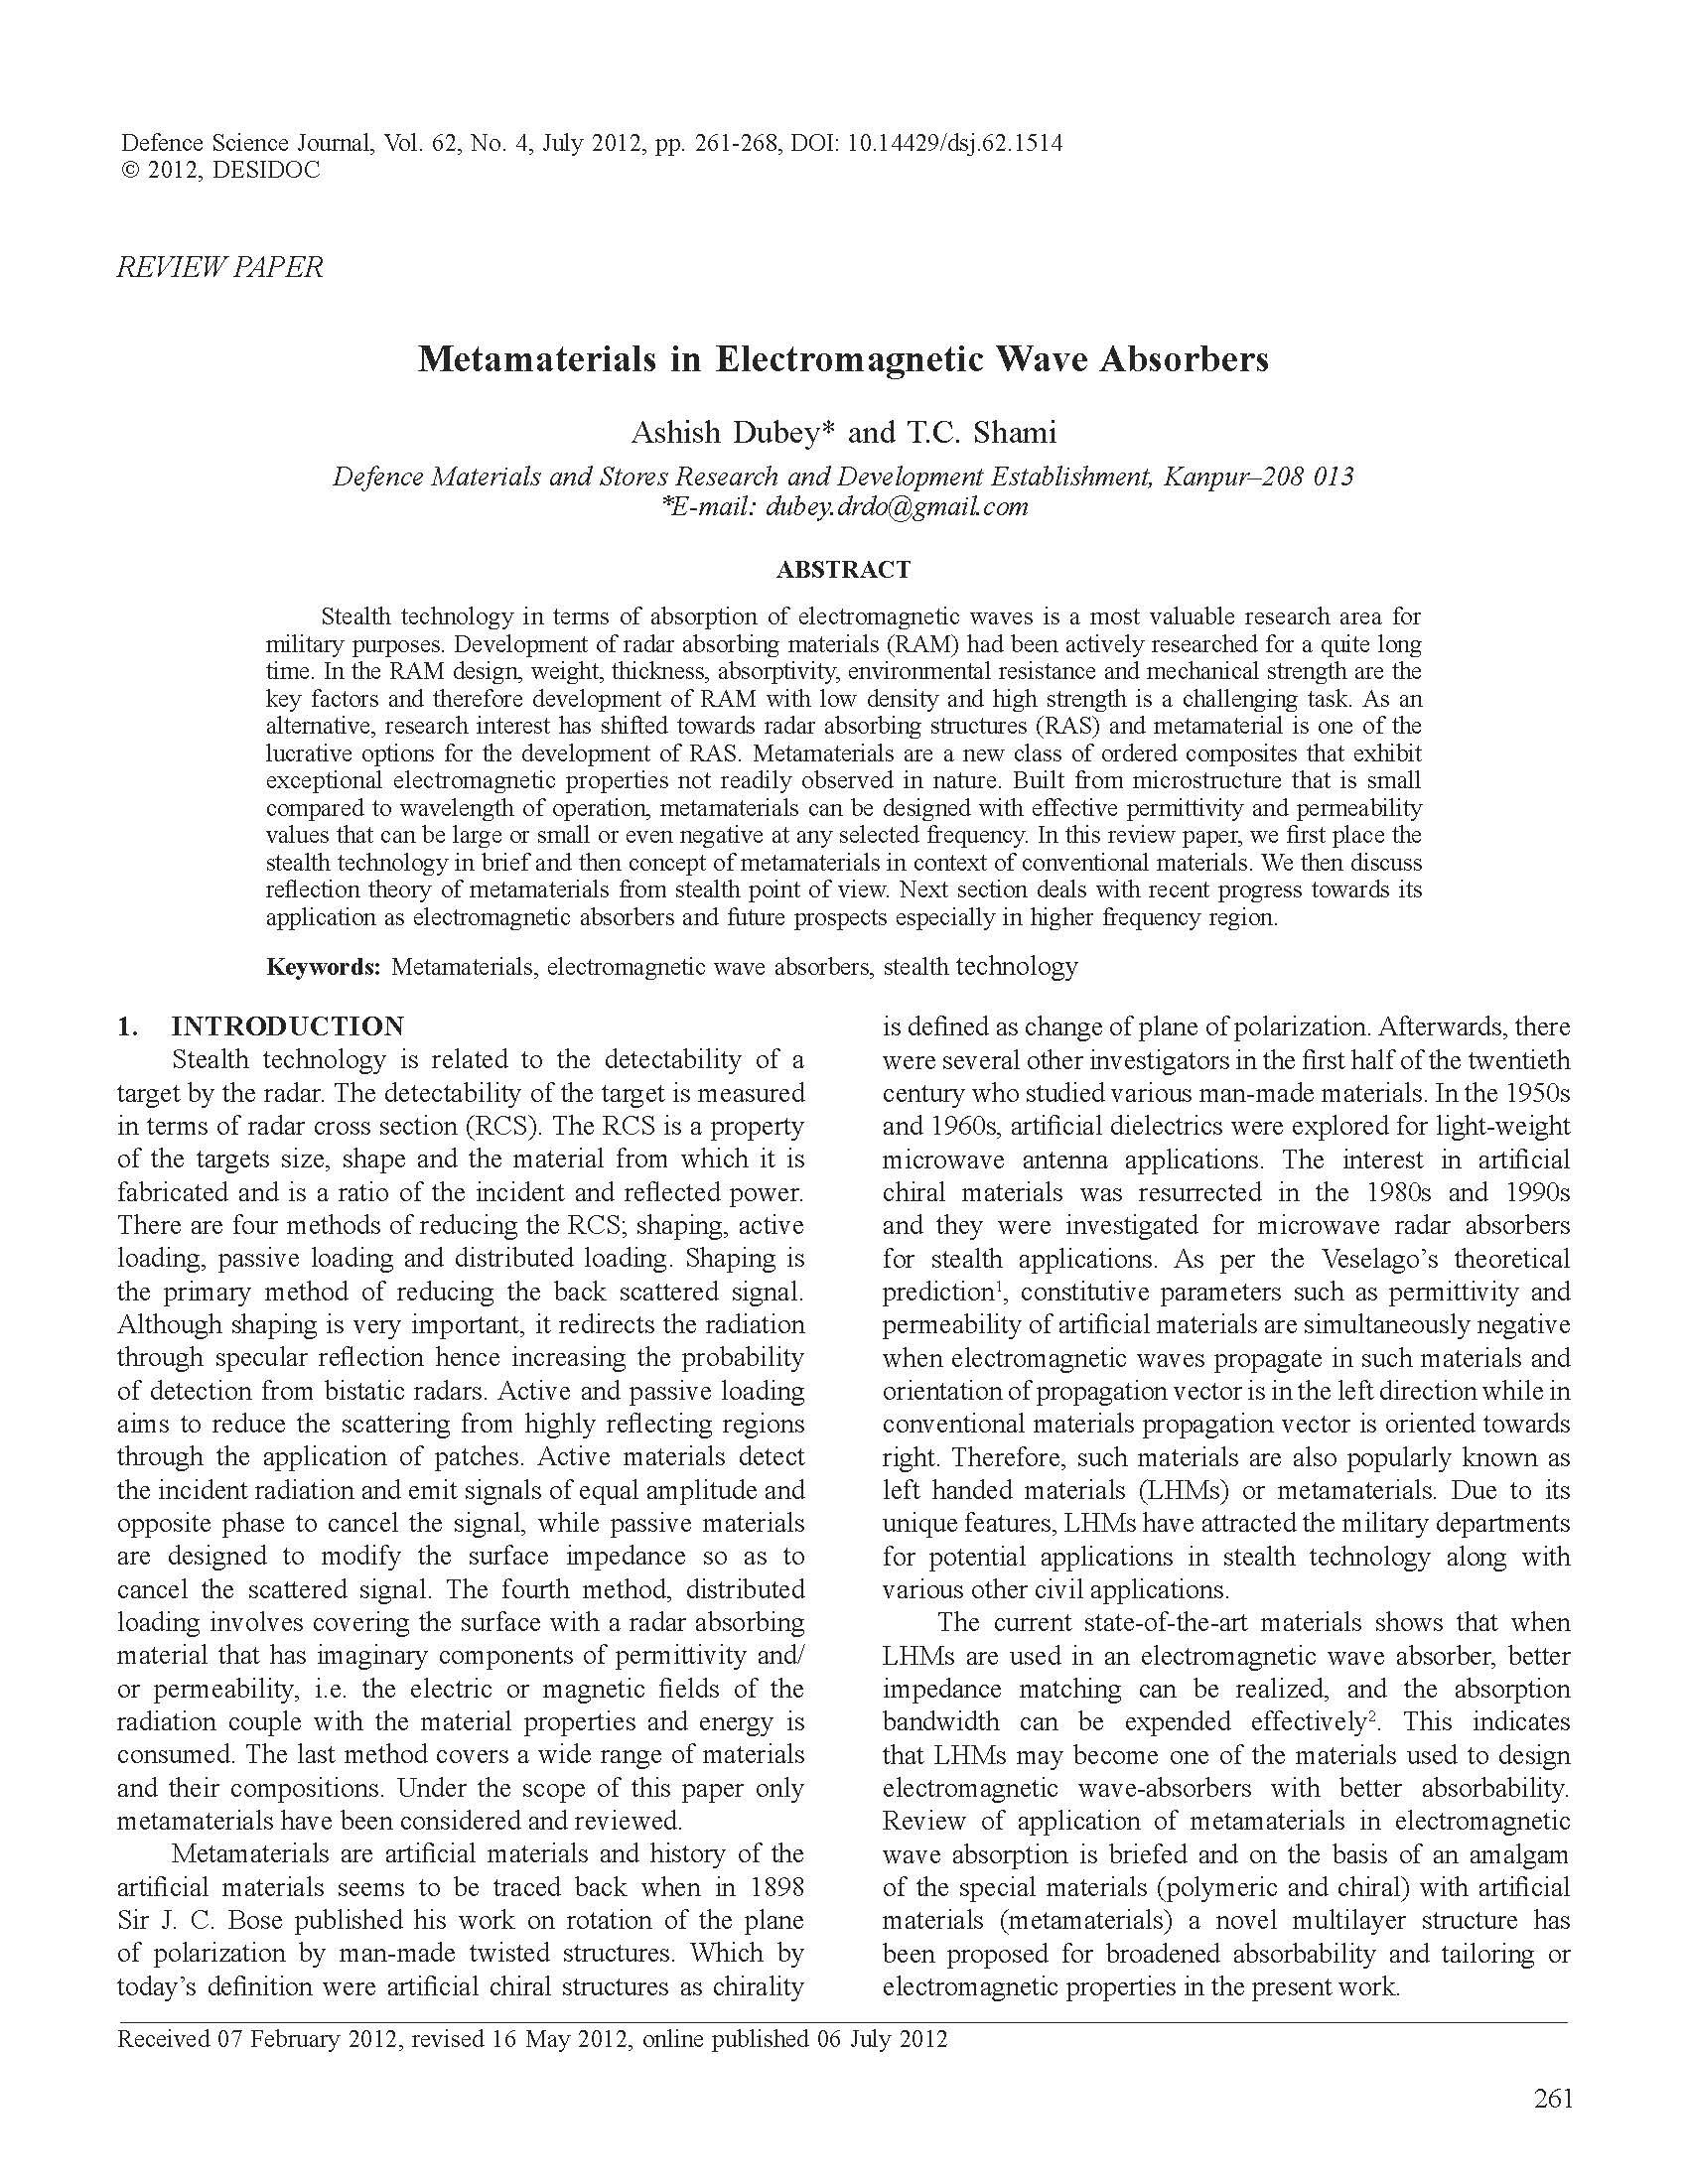 Metamaterials inEM wave absorbers_Page_1.jpg